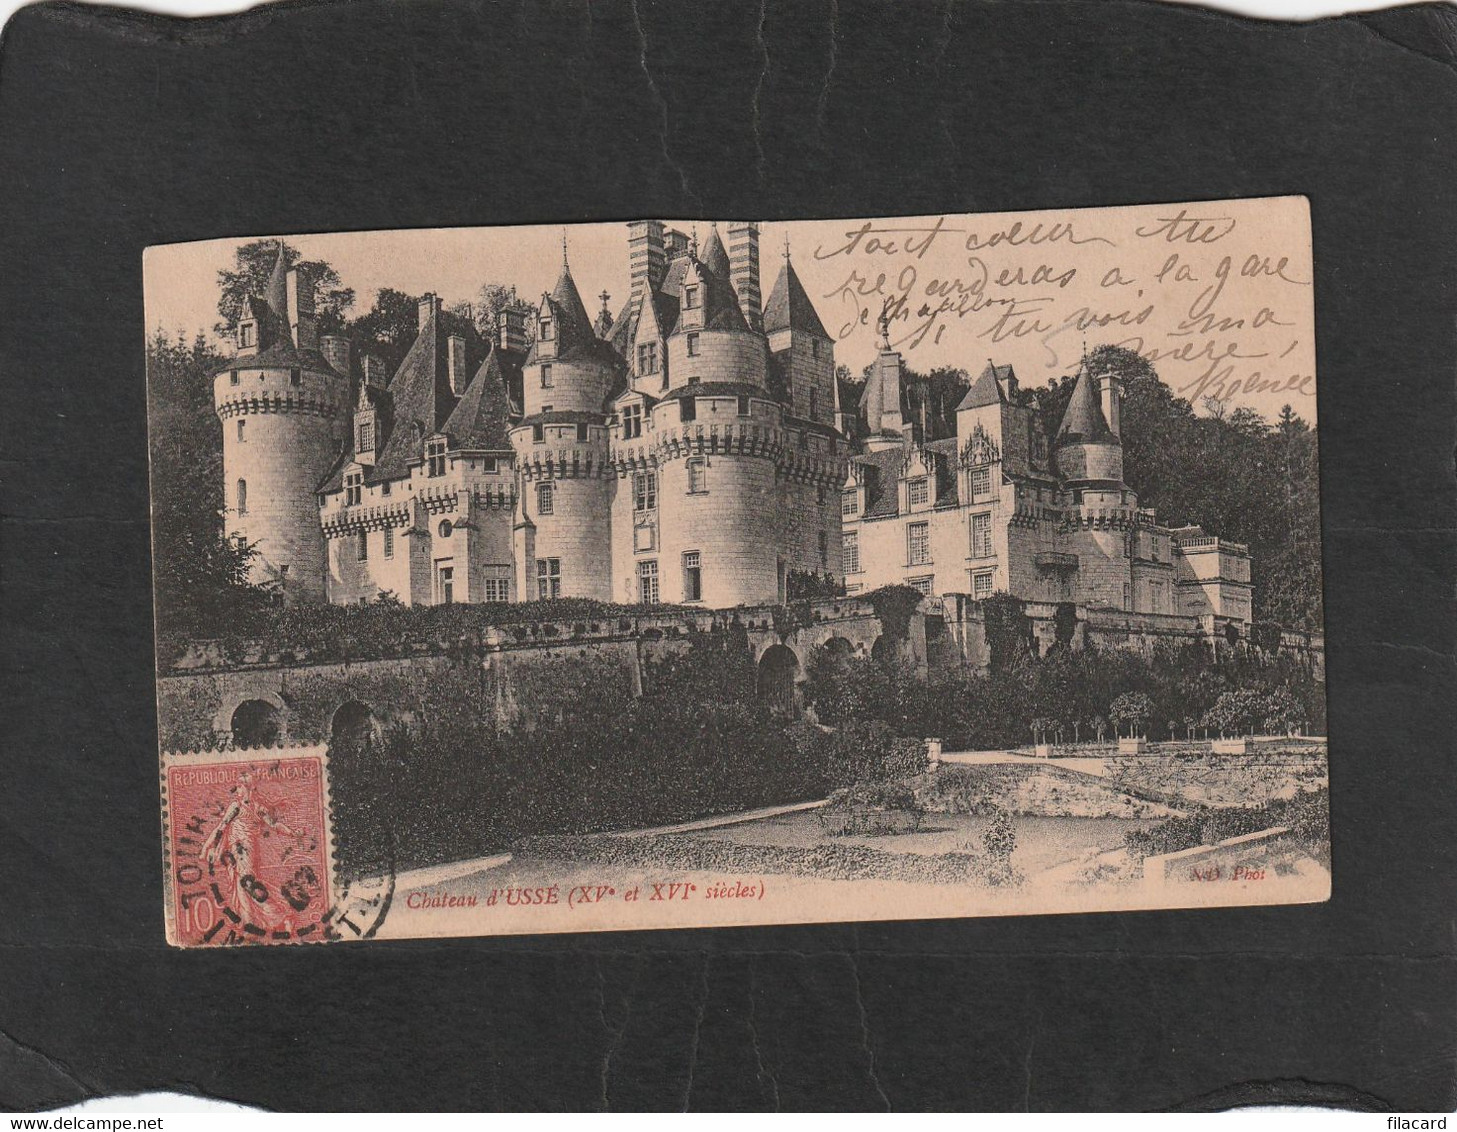 105728       Francia,    Chateau  D"Usse,  XVe  Et  XVIe  Siecles,  VG  1907 - Chanac